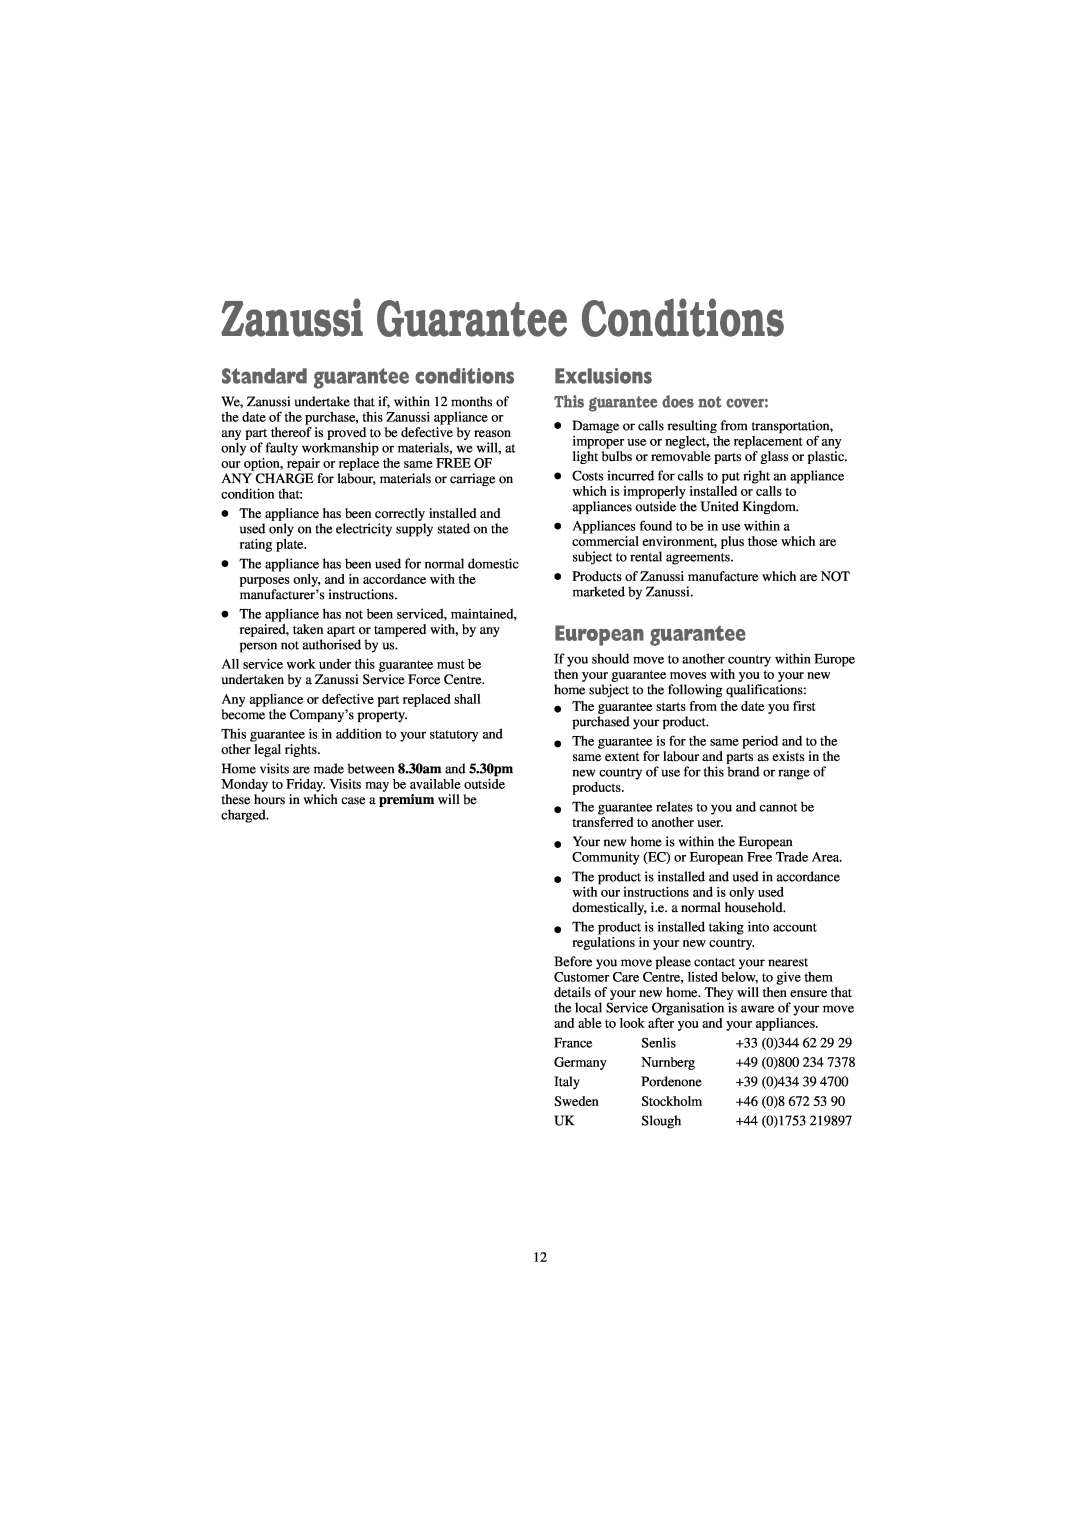 Zanussi TD 4100 W manual Zanussi Guarantee Conditions, Standard guarantee conditions, Exclusions, European guarantee 